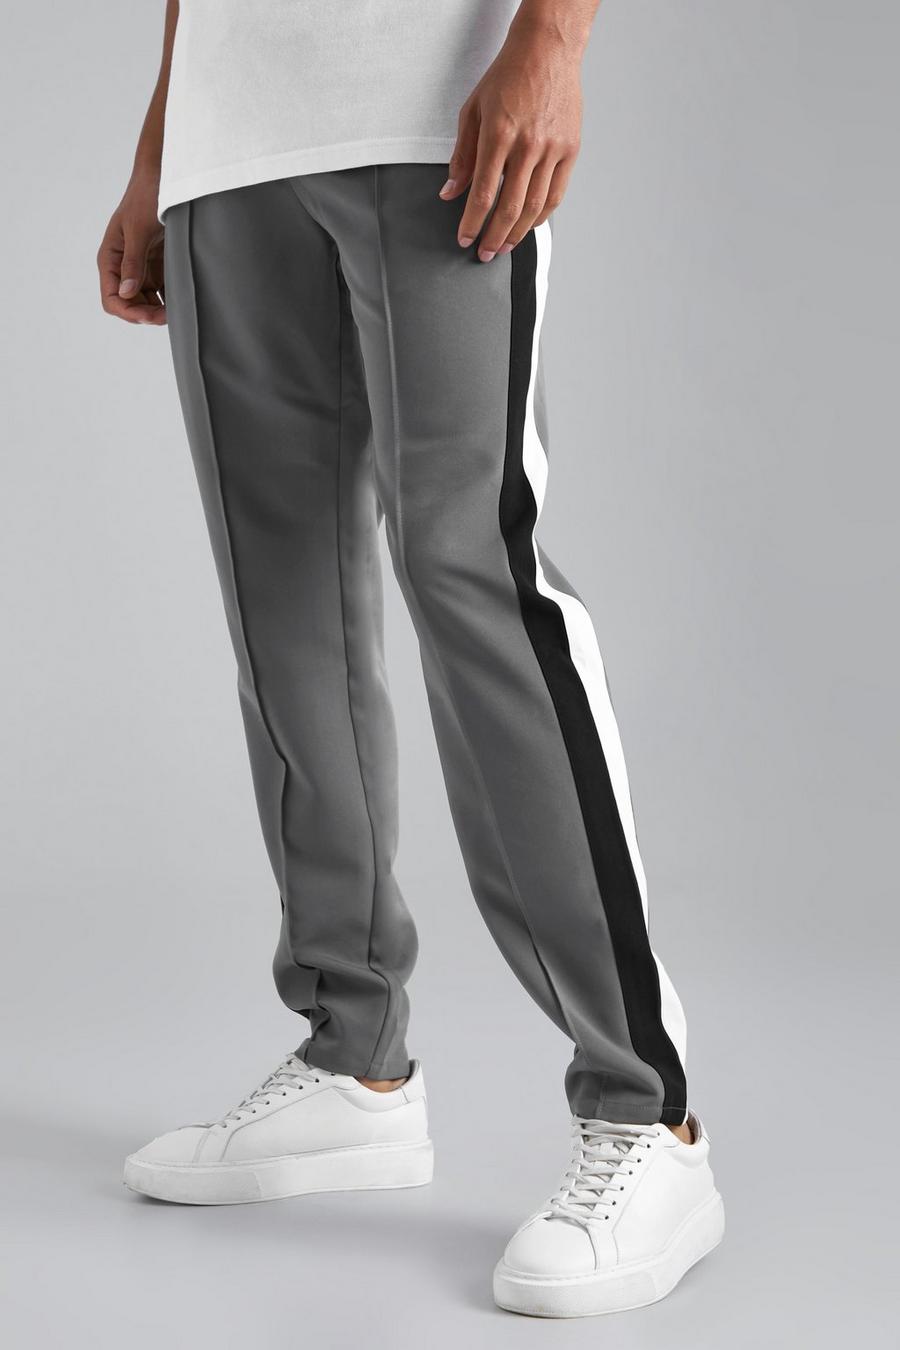 Pantalón Tall entallado con estampado universitario, Grey grigio